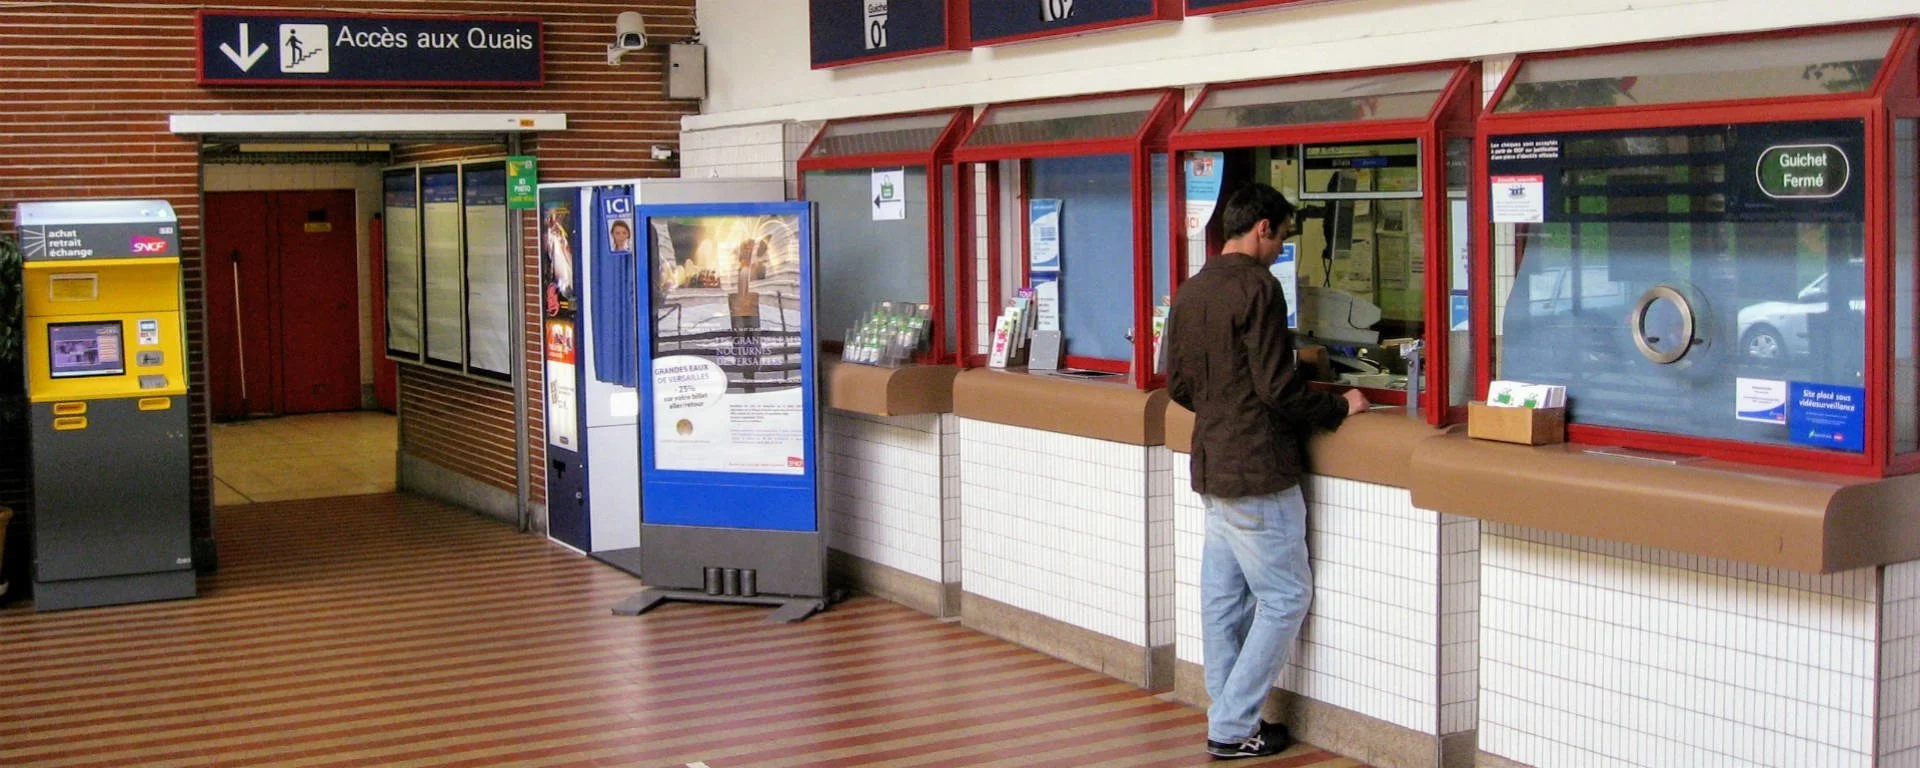 Guichet gare TER SNCF